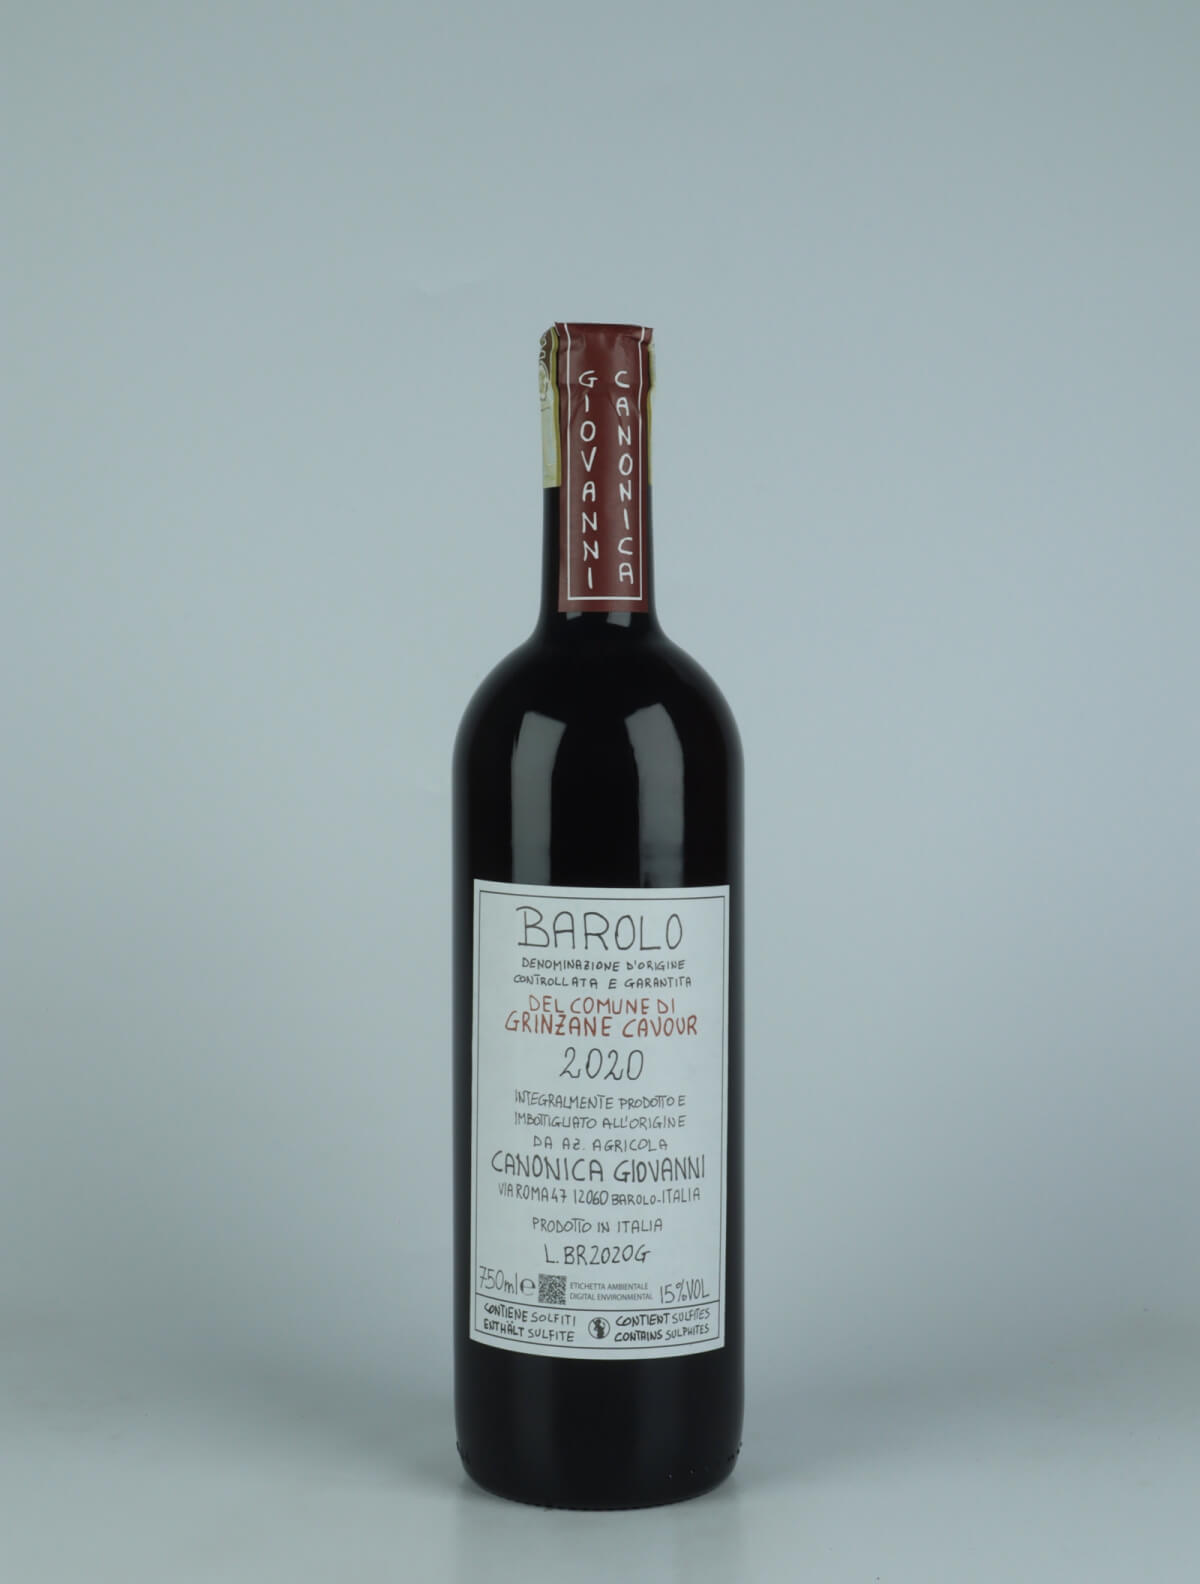 A bottle 2020 Barolo - Del Comune di Grinzane Cavour Red wine from Giovanni Canonica, Piedmont in Italy